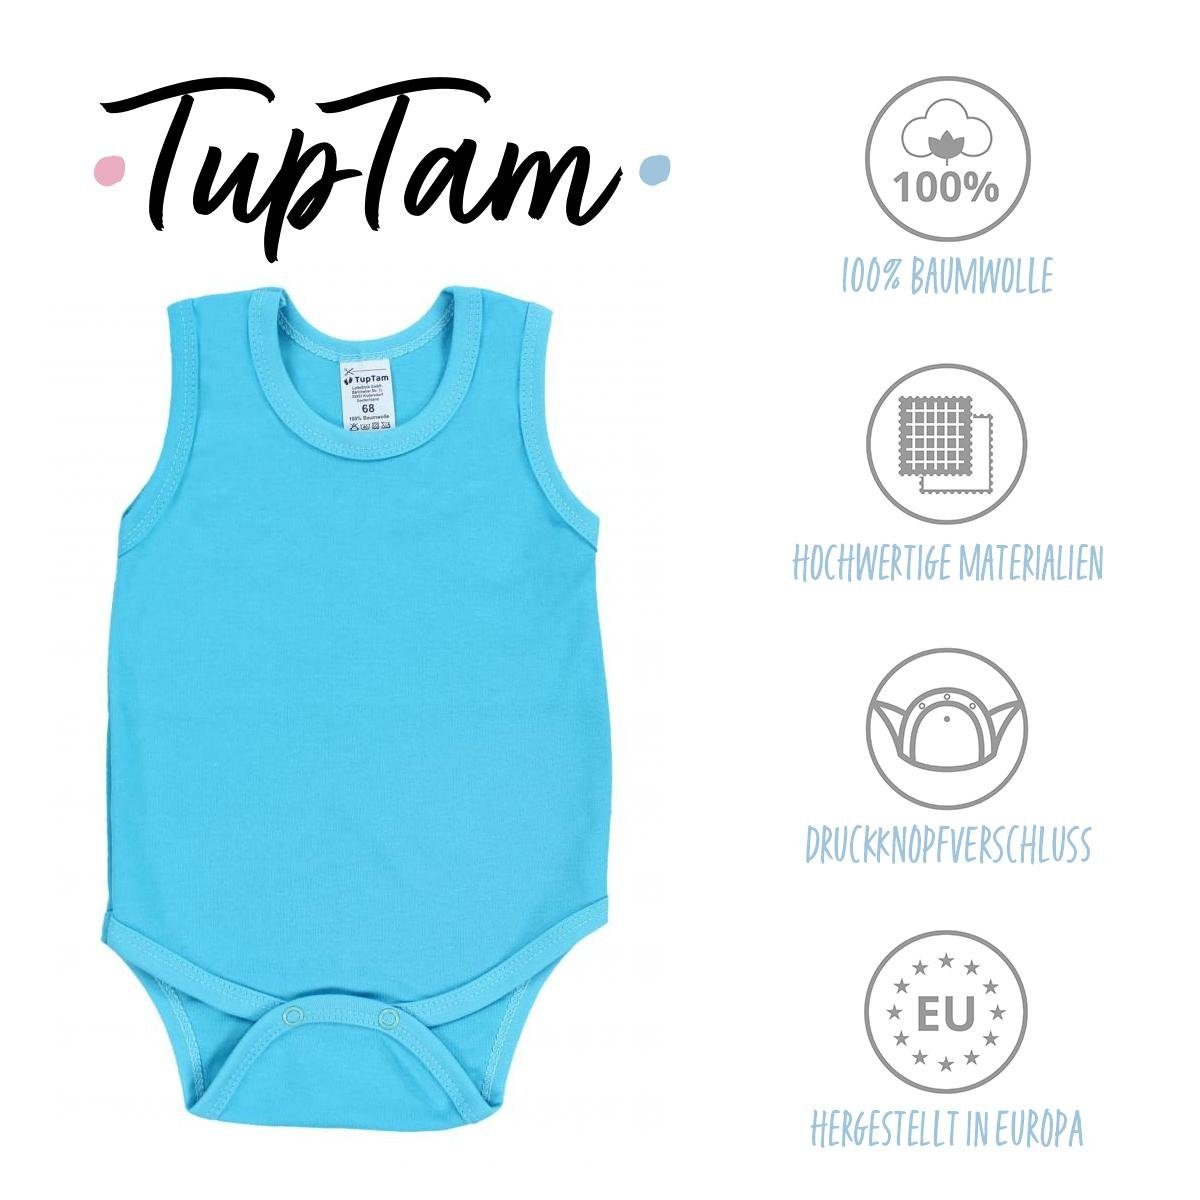 Jungen TupTam in 5er Achselbody Baby TupTam Body Pack Unifarben Farbenmix 2